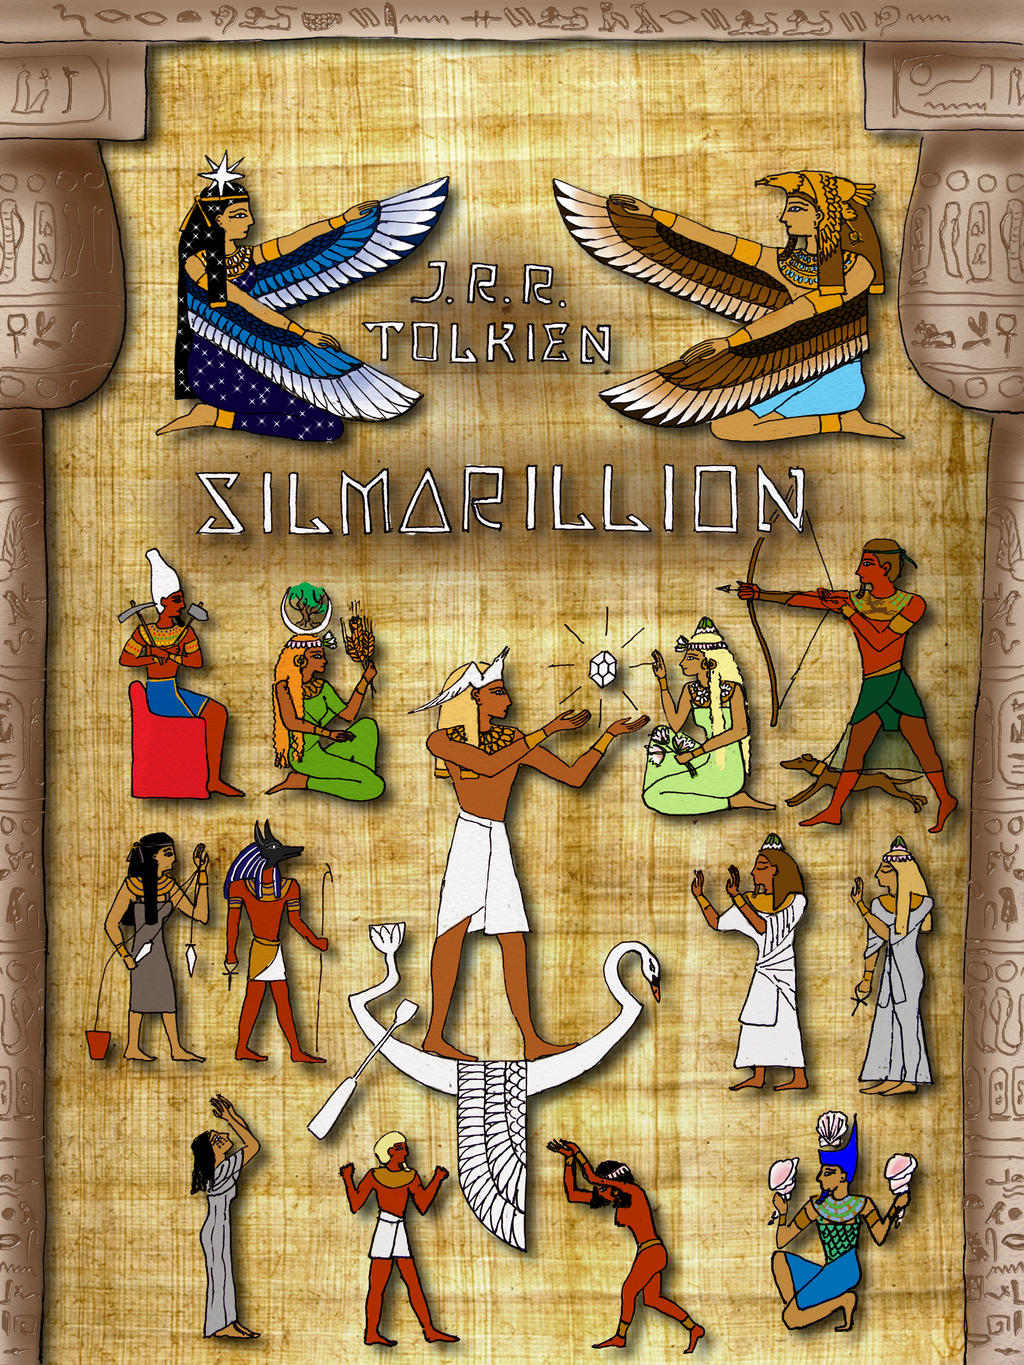 Egypt-style Silmarillion